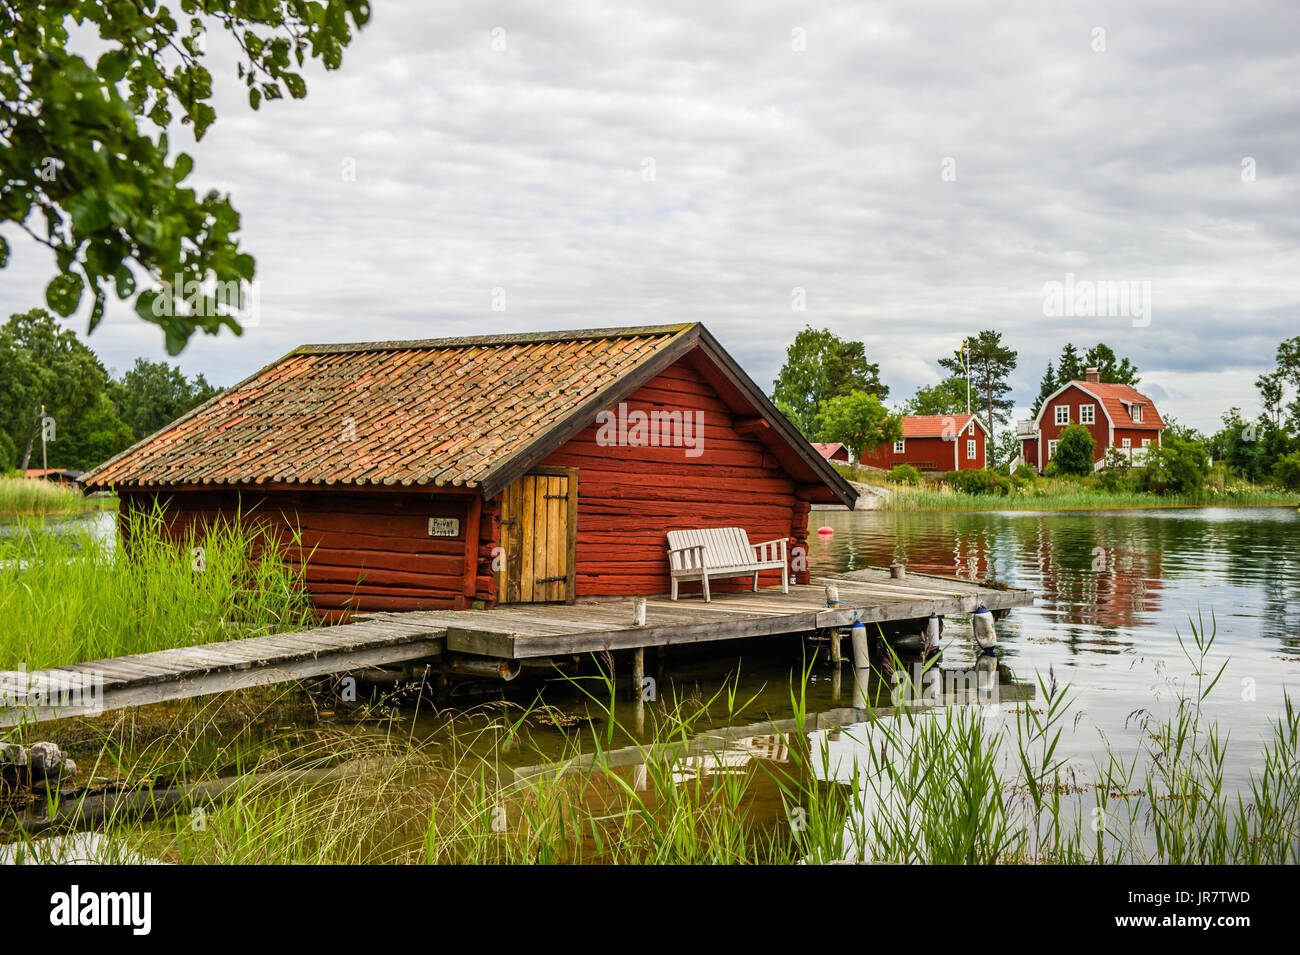 La vecchia darsena con travi di legno con il banco di bugiardi sul ponte nella parte settentrionale dell'arcipelago di Stoccolma, Bjorko-Arholma, Marum Foto Stock